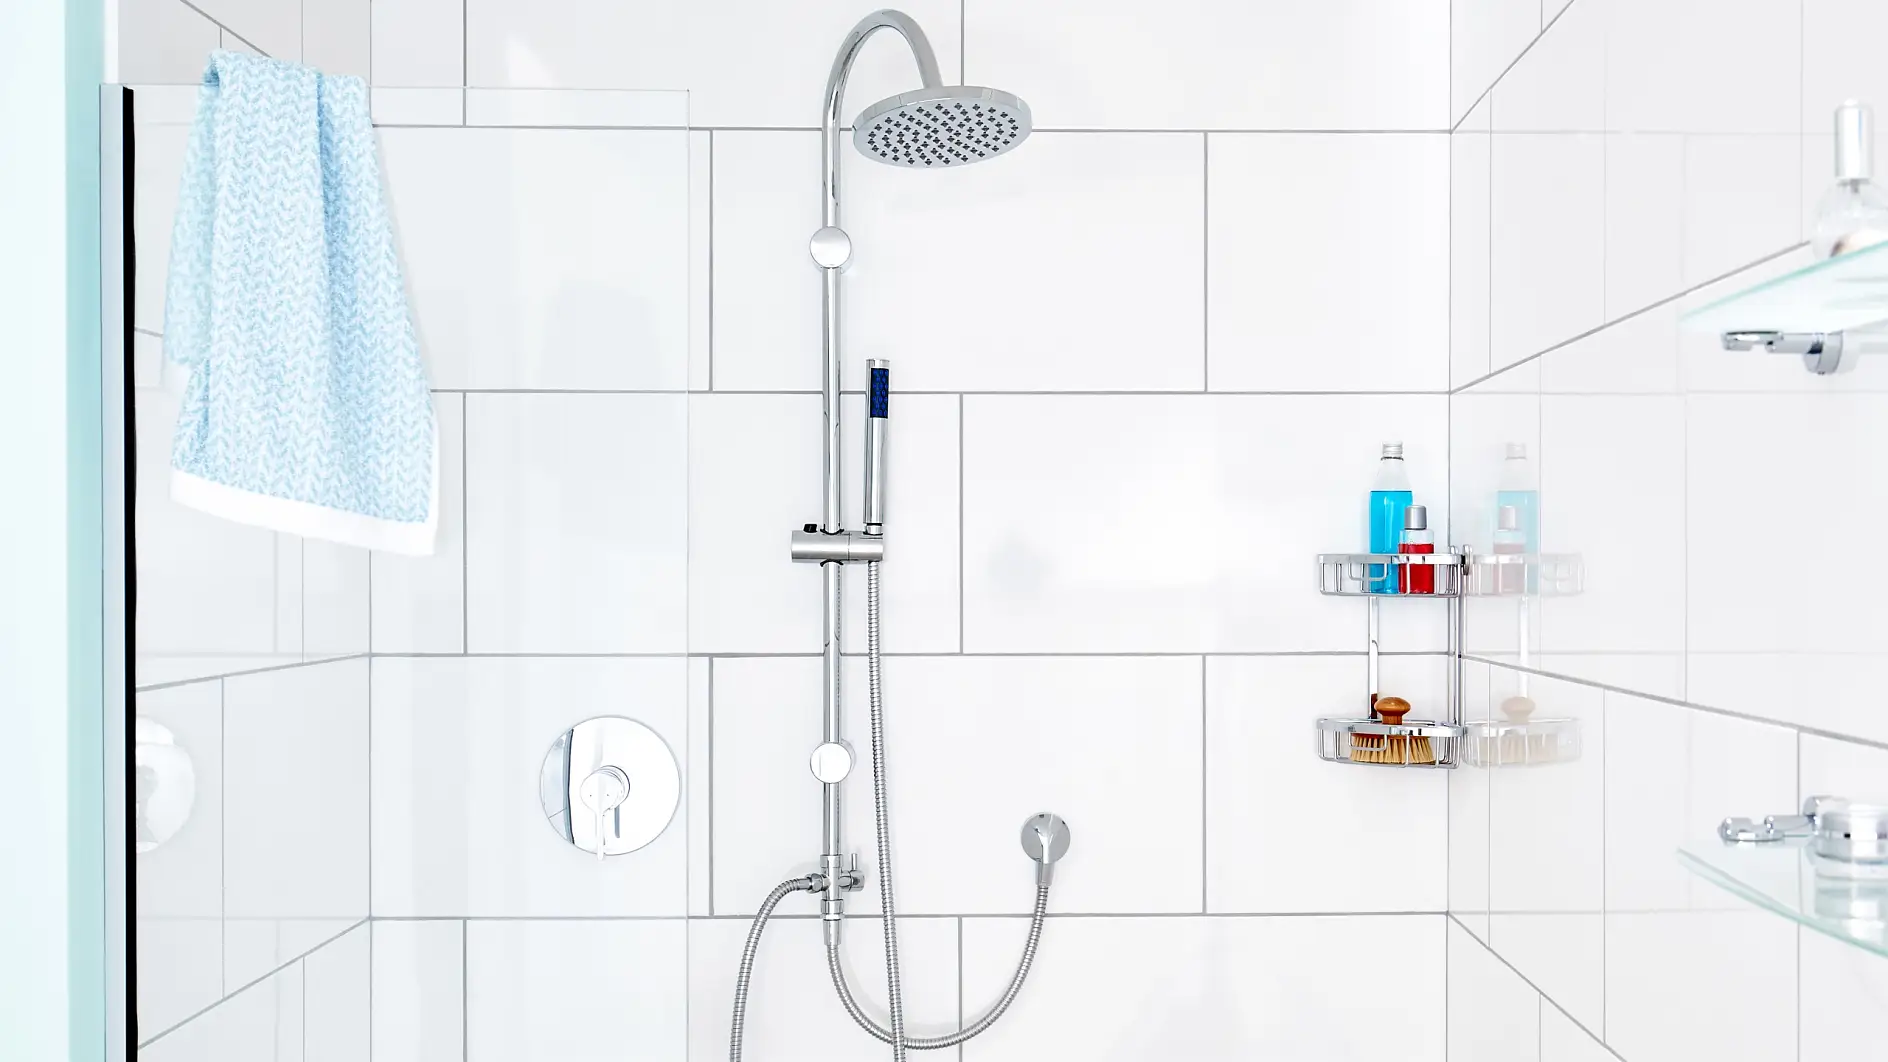 Středobod vaší sprchy. Naše sprchová tyč s minimalistickým designem zkvalitní průtok sprchy a zlepší váš pocit ze sprchování.